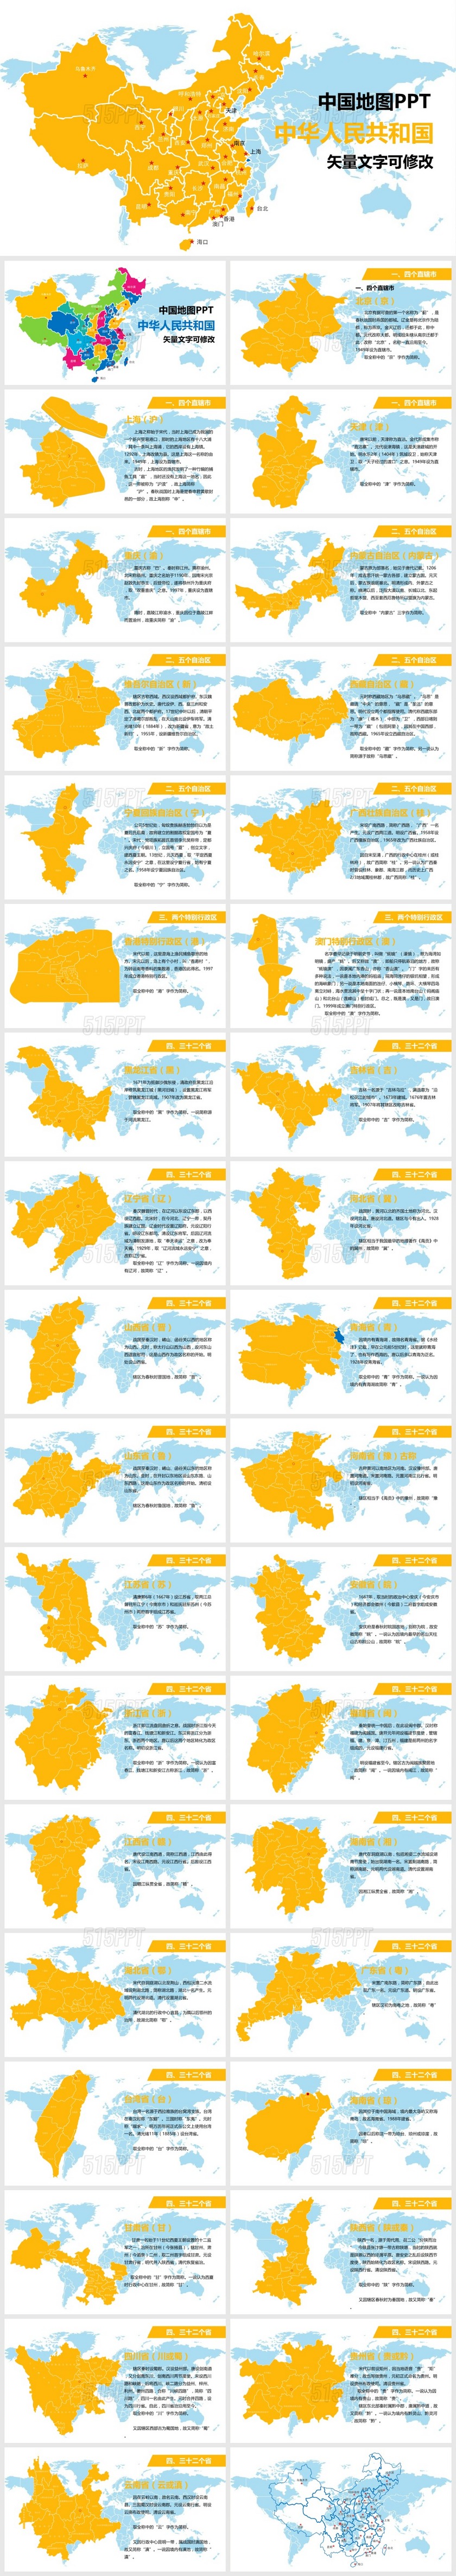 中国地图矢量地图PPT模版